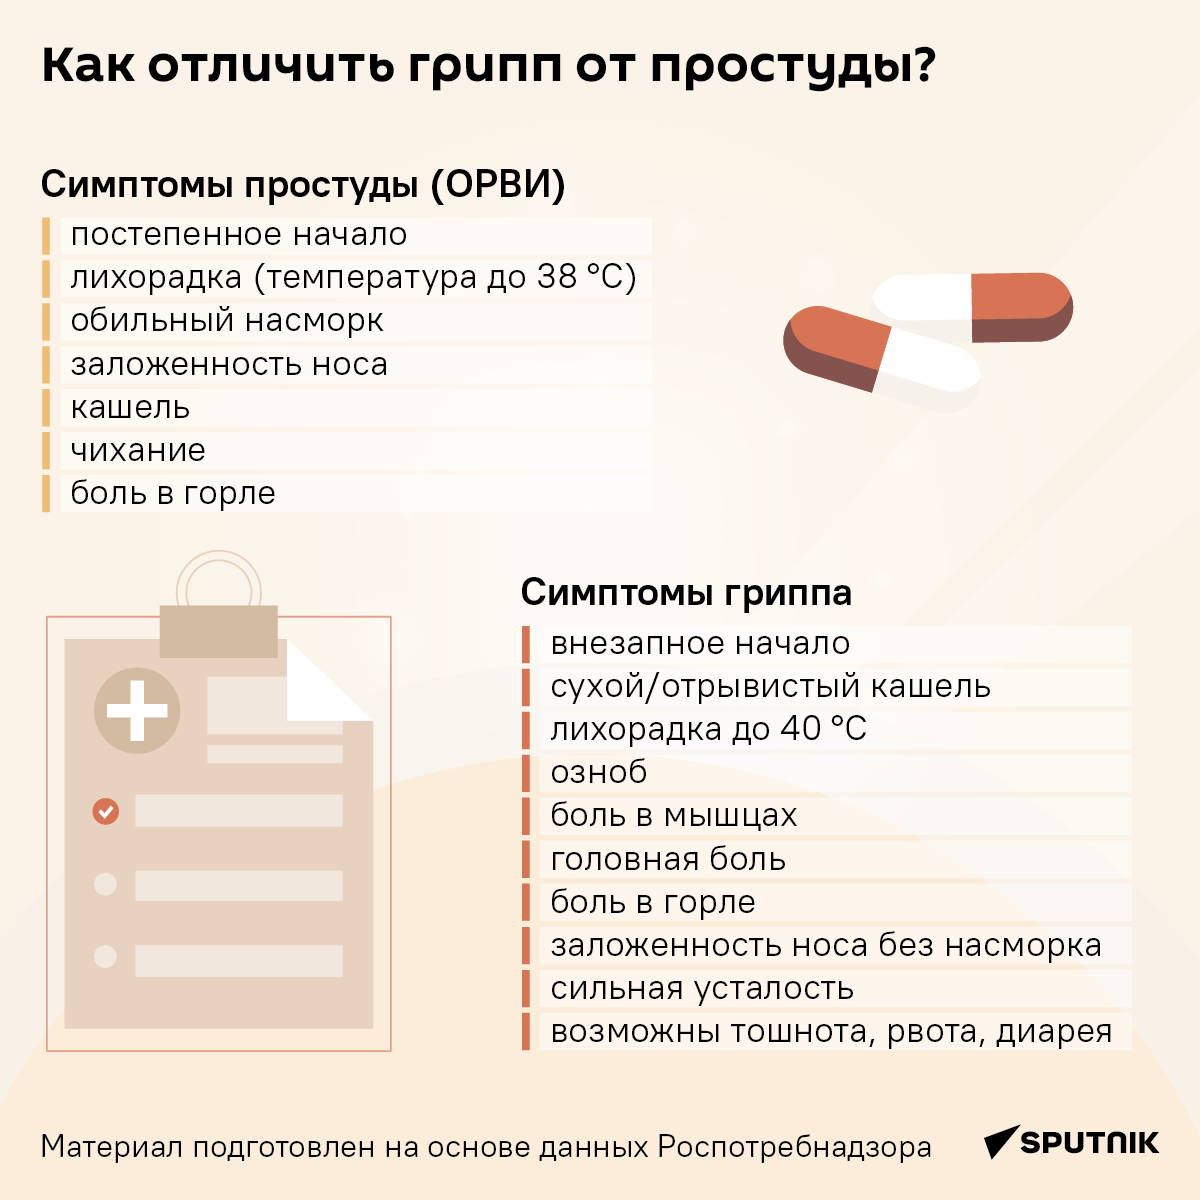 Как отличить грипп от простуды - инфографика - Sputnik Грузия